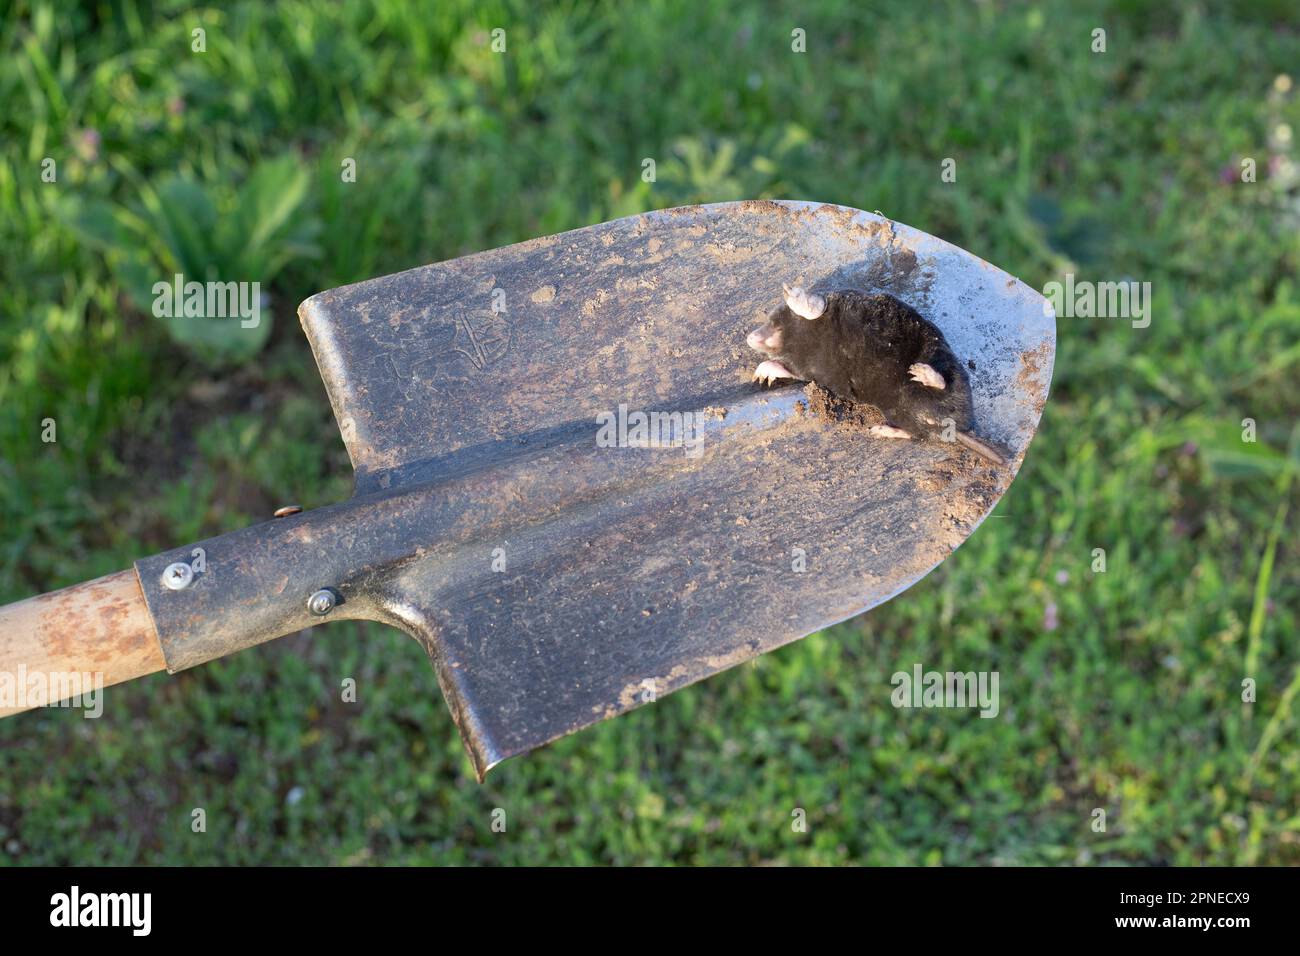 la mole morte repose sur la baïonnette d'une pelle. Extermination de rongeurs-ravageurs à leur chalet d'été. Banque D'Images